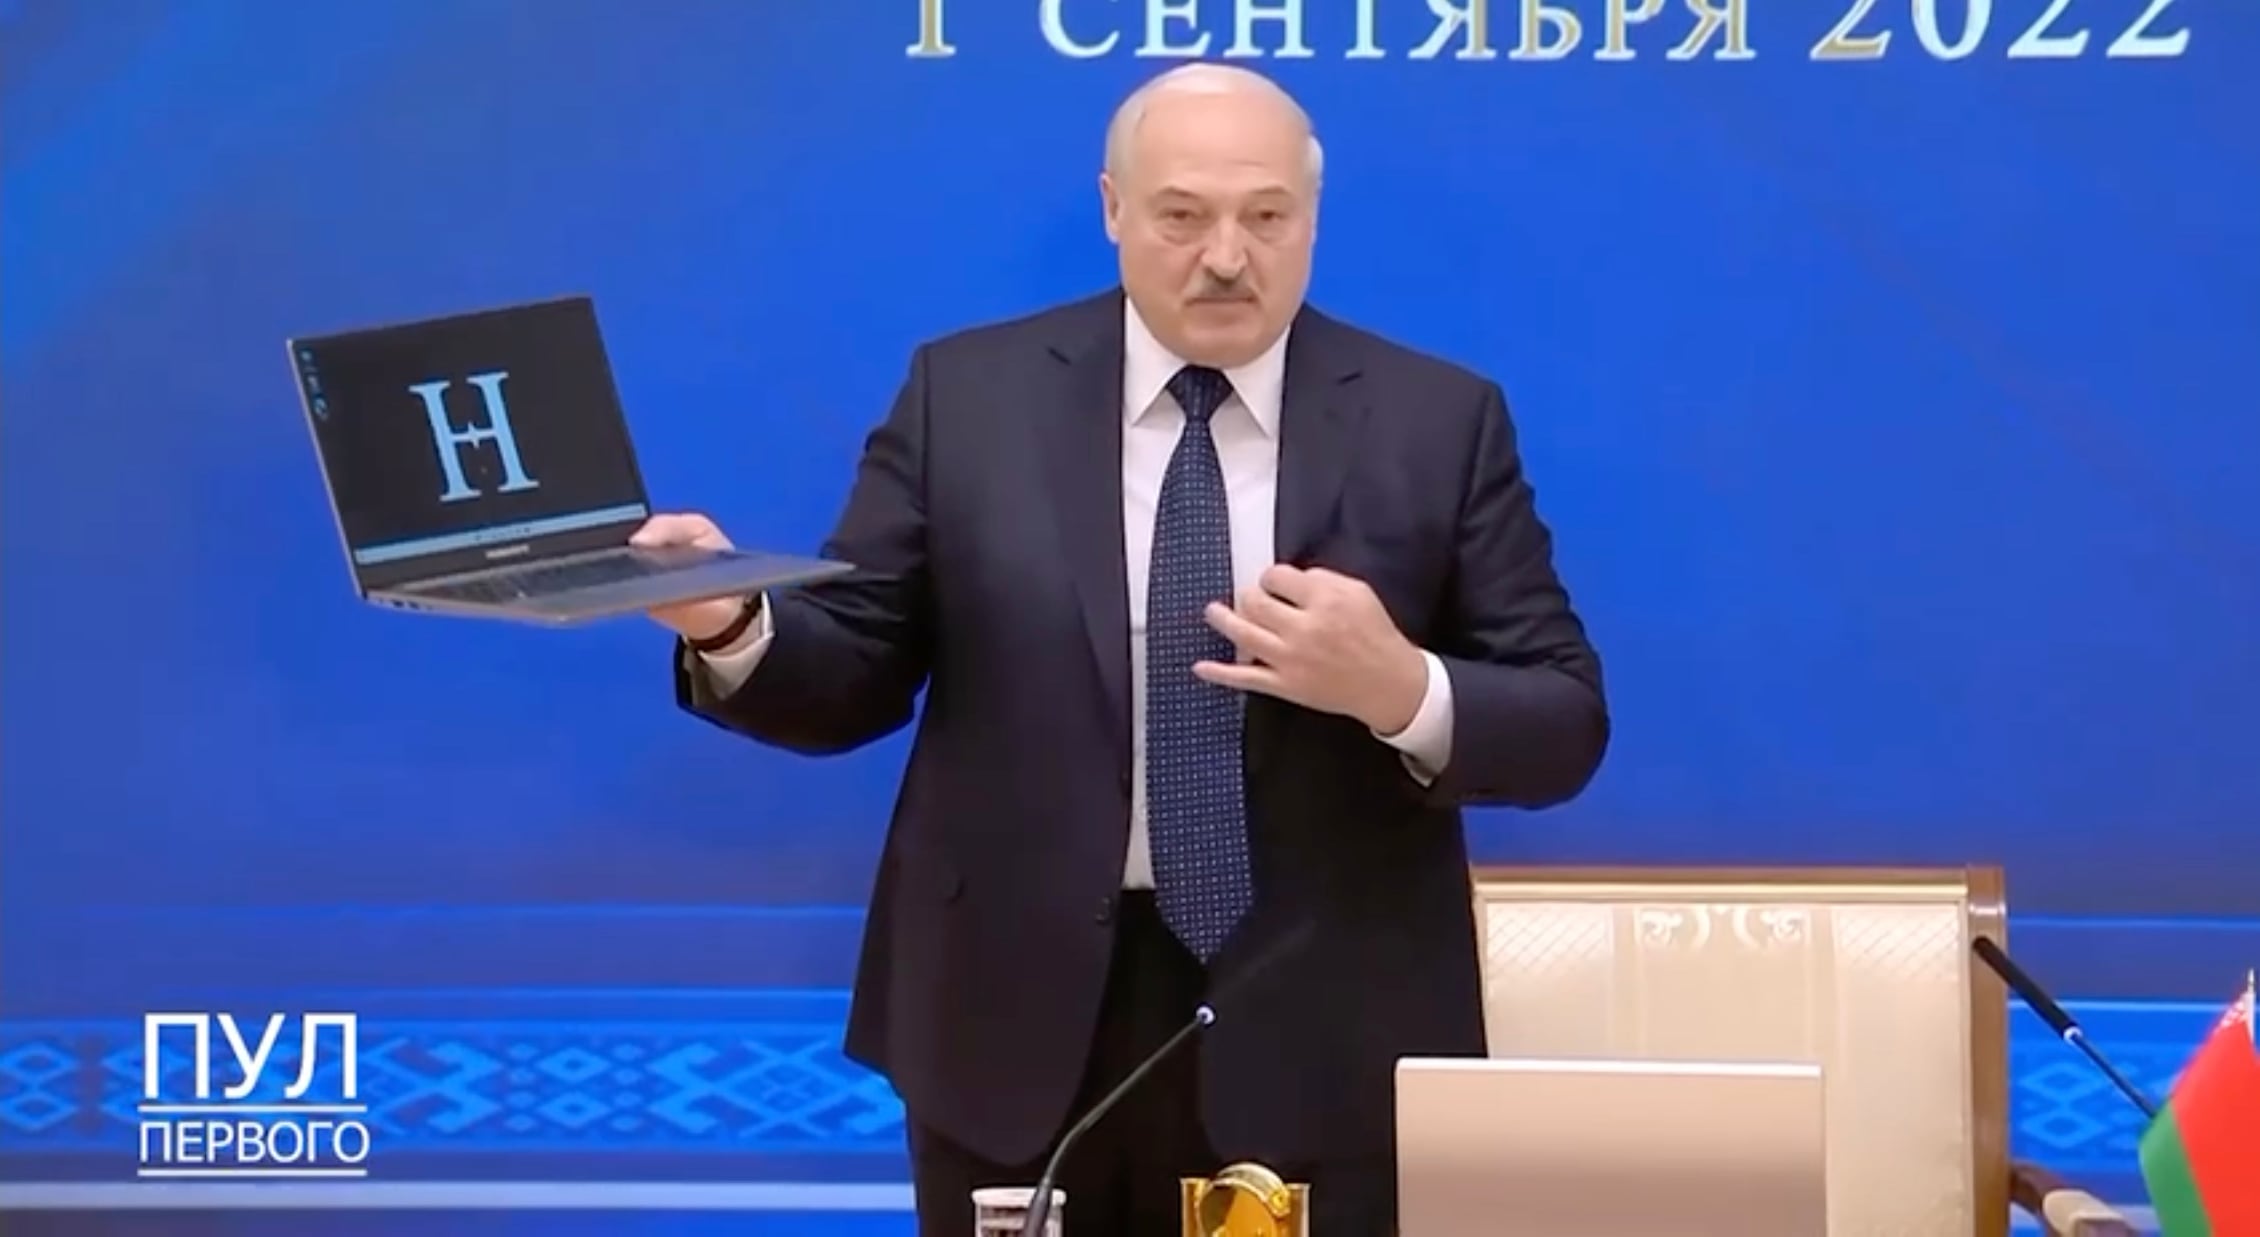 Лукашенко показал первый белорусский ноутбук. В нем 12% комплектующих из Белоруссии